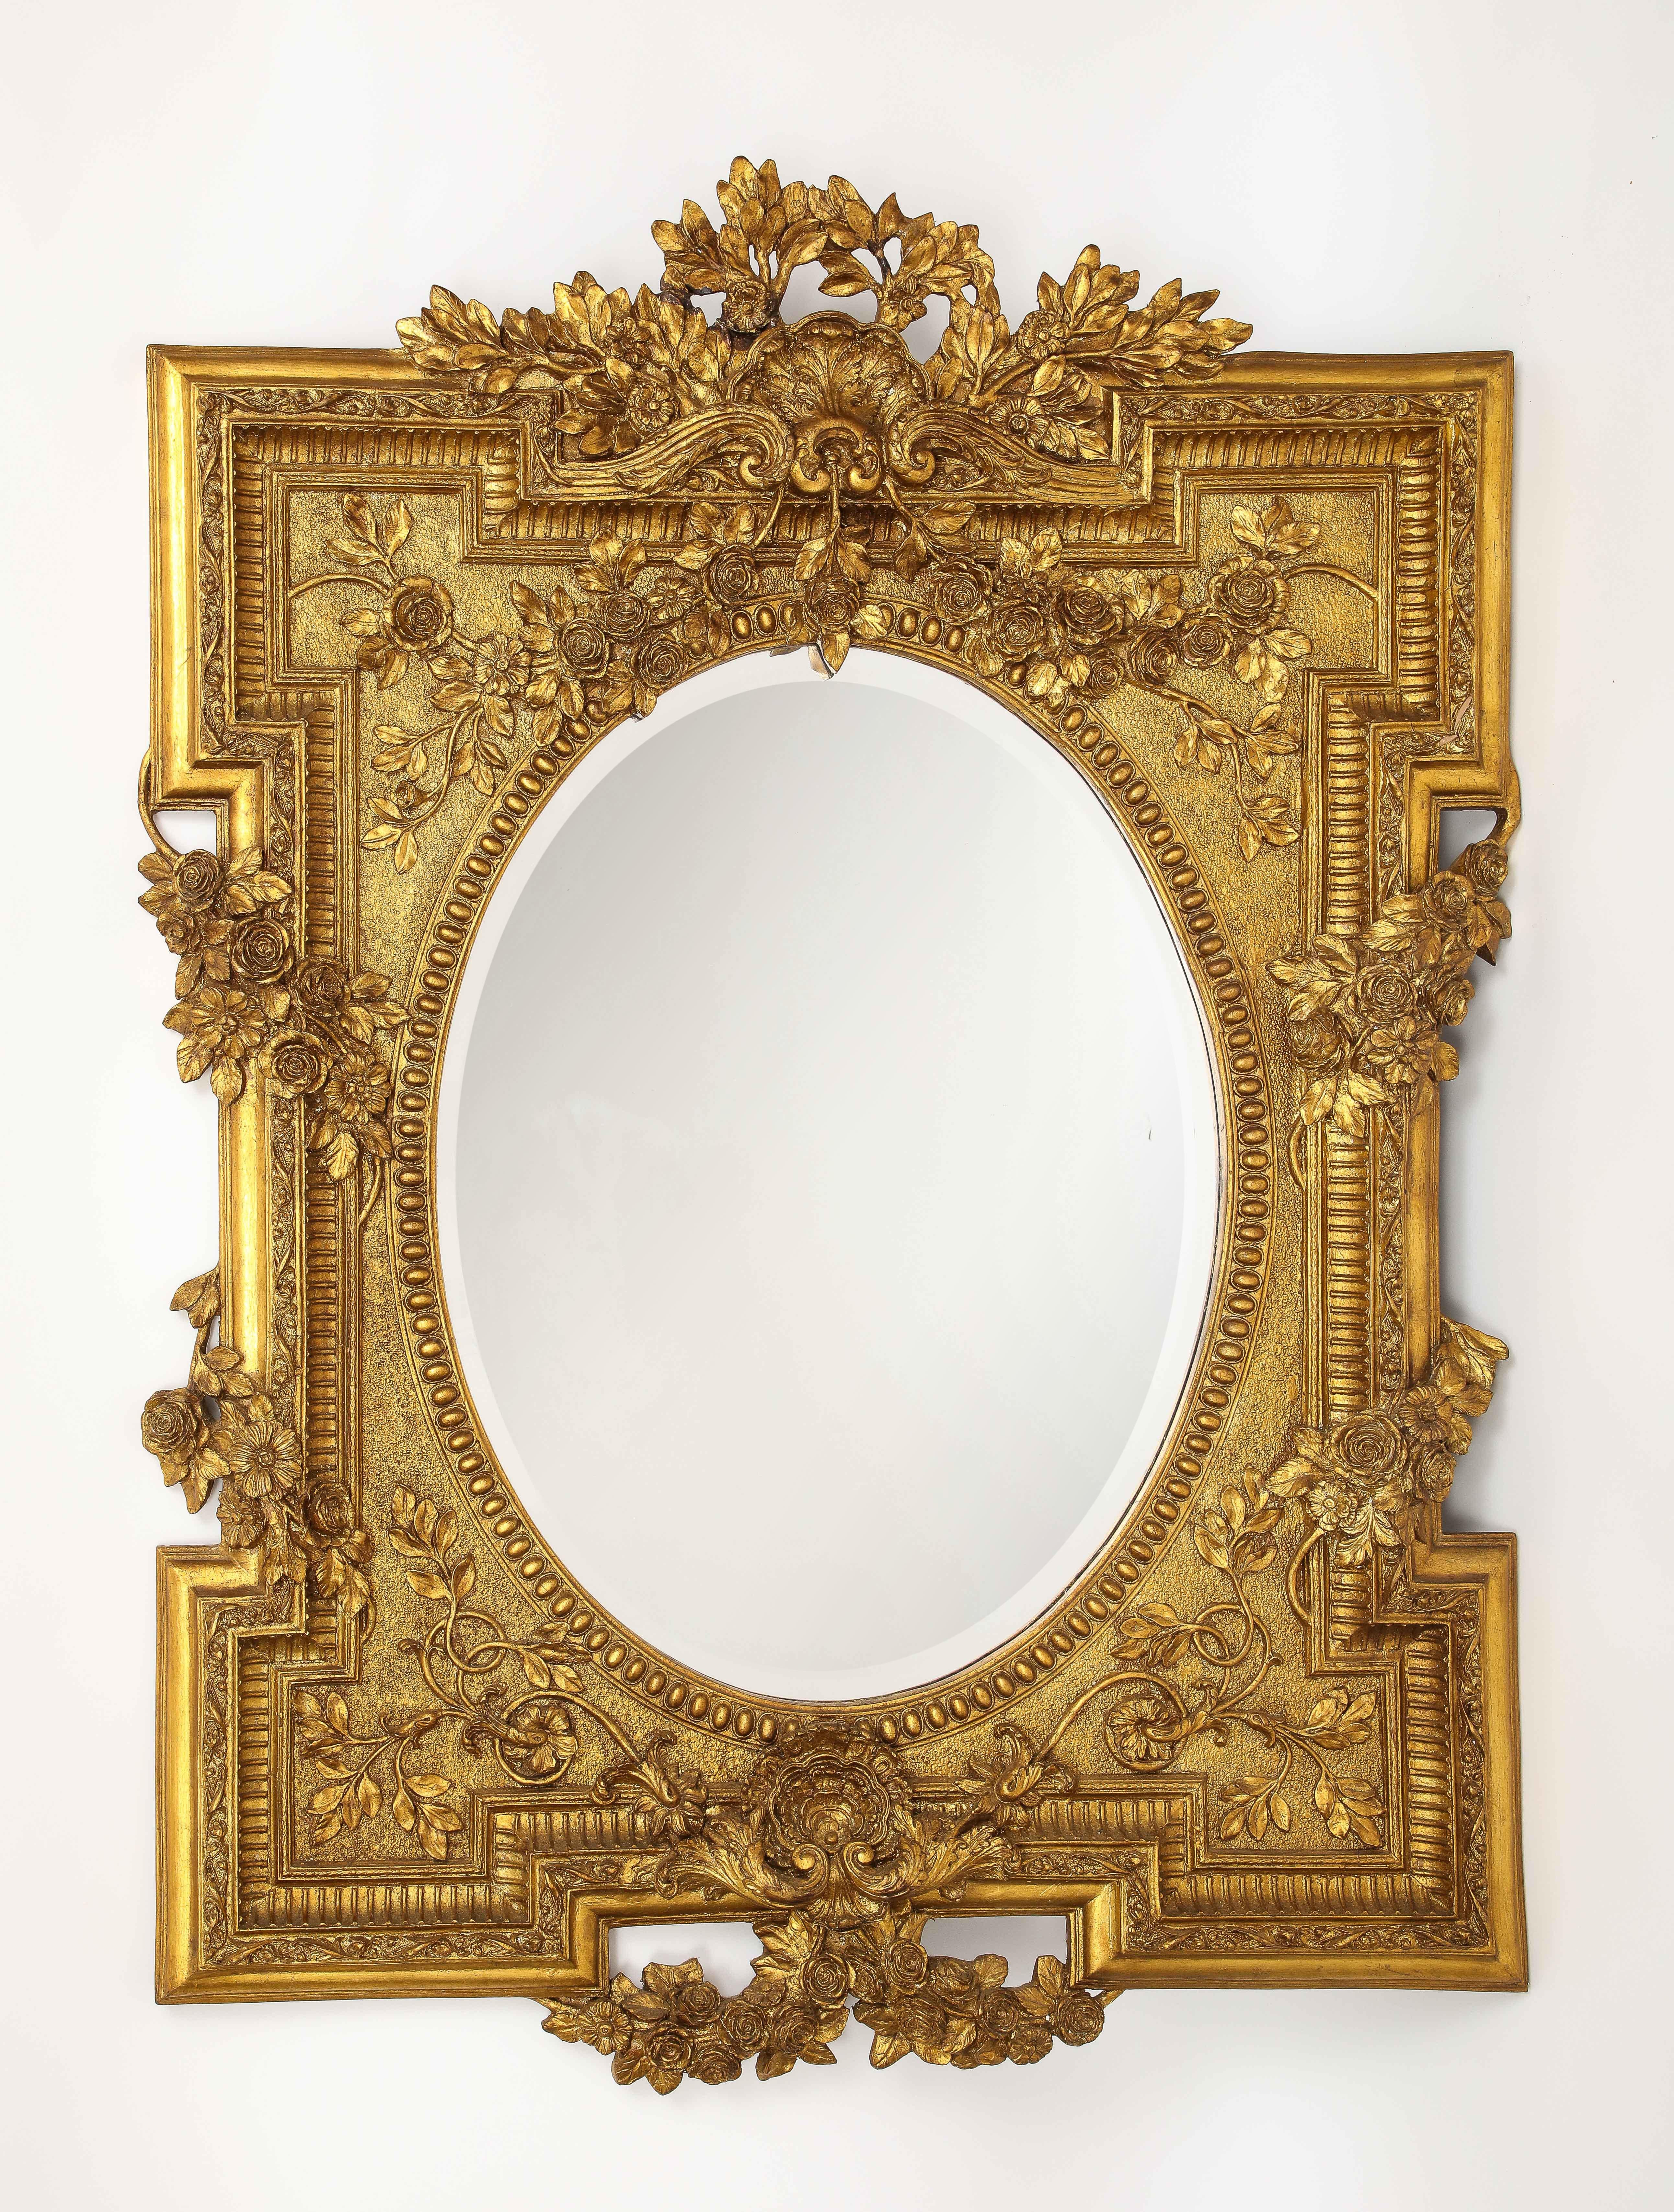 Merveilleux miroir biseauté en bois doré de style Louis XVI des années 1950, sculpté à la main avec des motifs de vignes florales. Le cadre en bois doré est magnifiquement sculpté à la main et magnifiquement doré à l'or 24K. La qualité et la